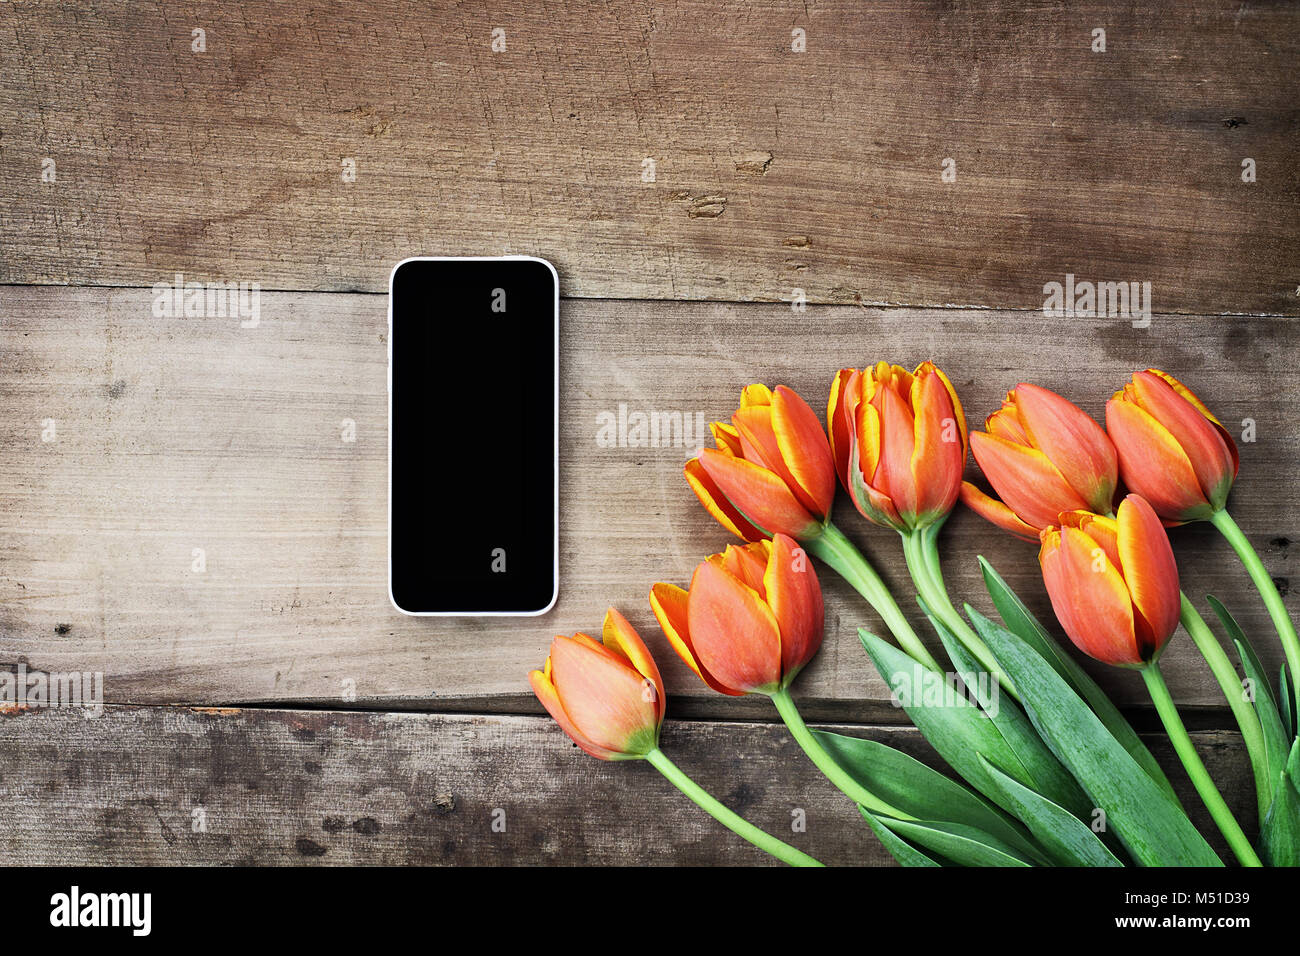 Fotografía cenital un teléfono celular en blanco con un Ramo de tulipanes naranjas y amarillas sobre una tabla de madera. Plana Vista superior laicos estilo. Foto de stock